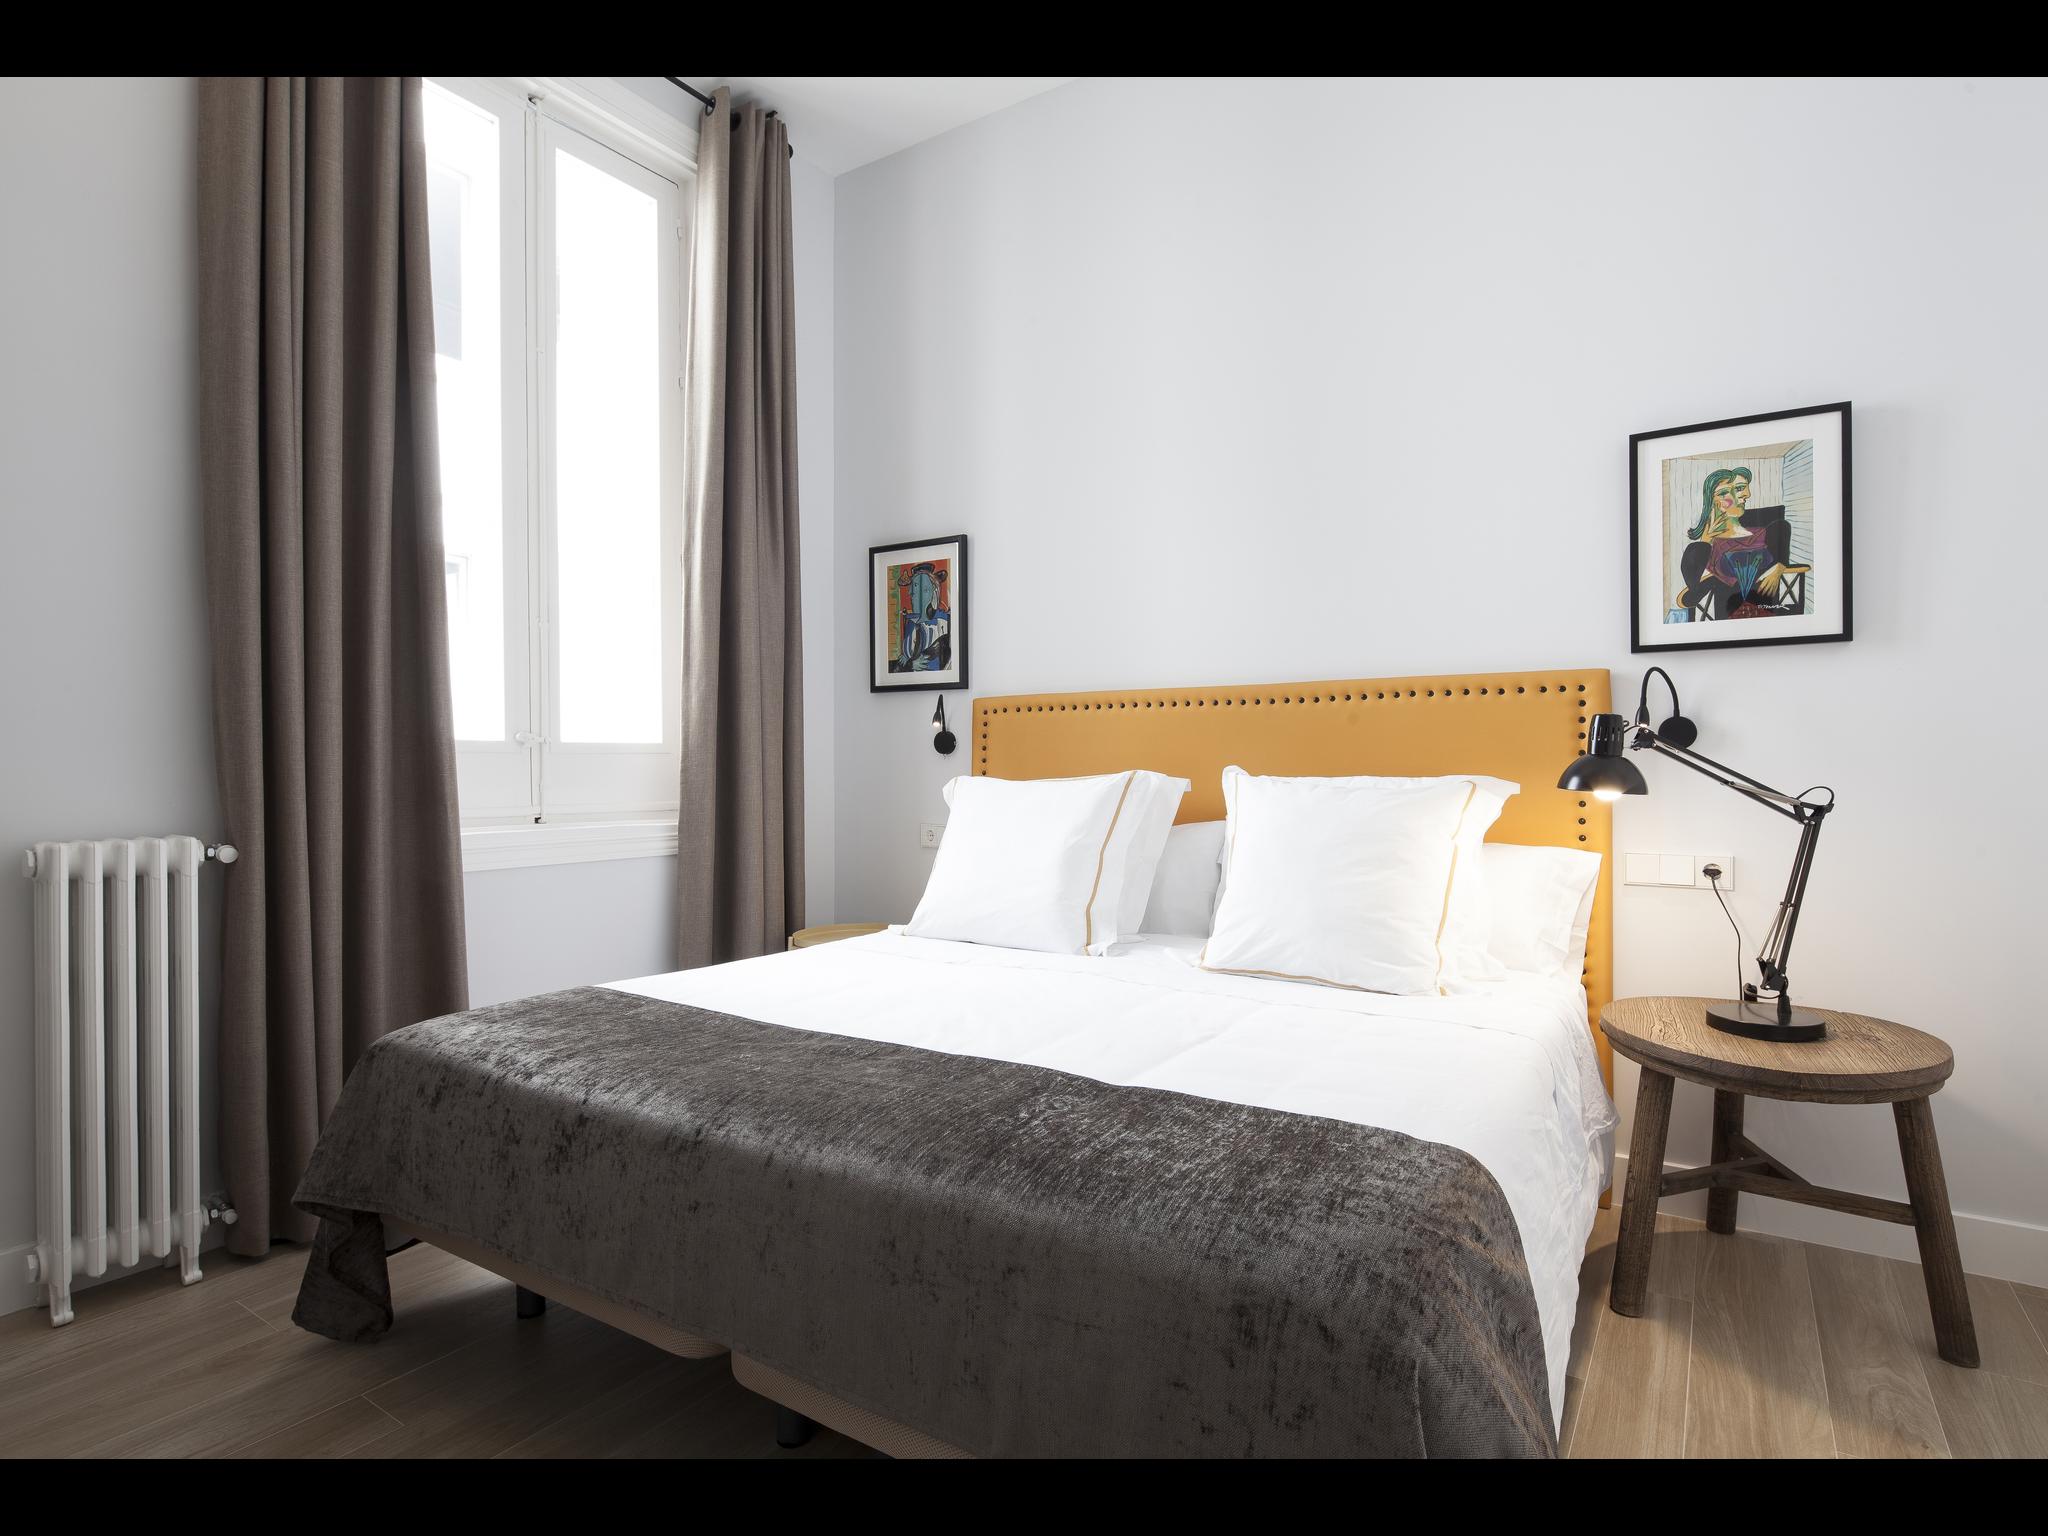 Puebla es un apartamento de lujo en Madrid para expats. Está situado en la calle de la Puebla, Madrid.